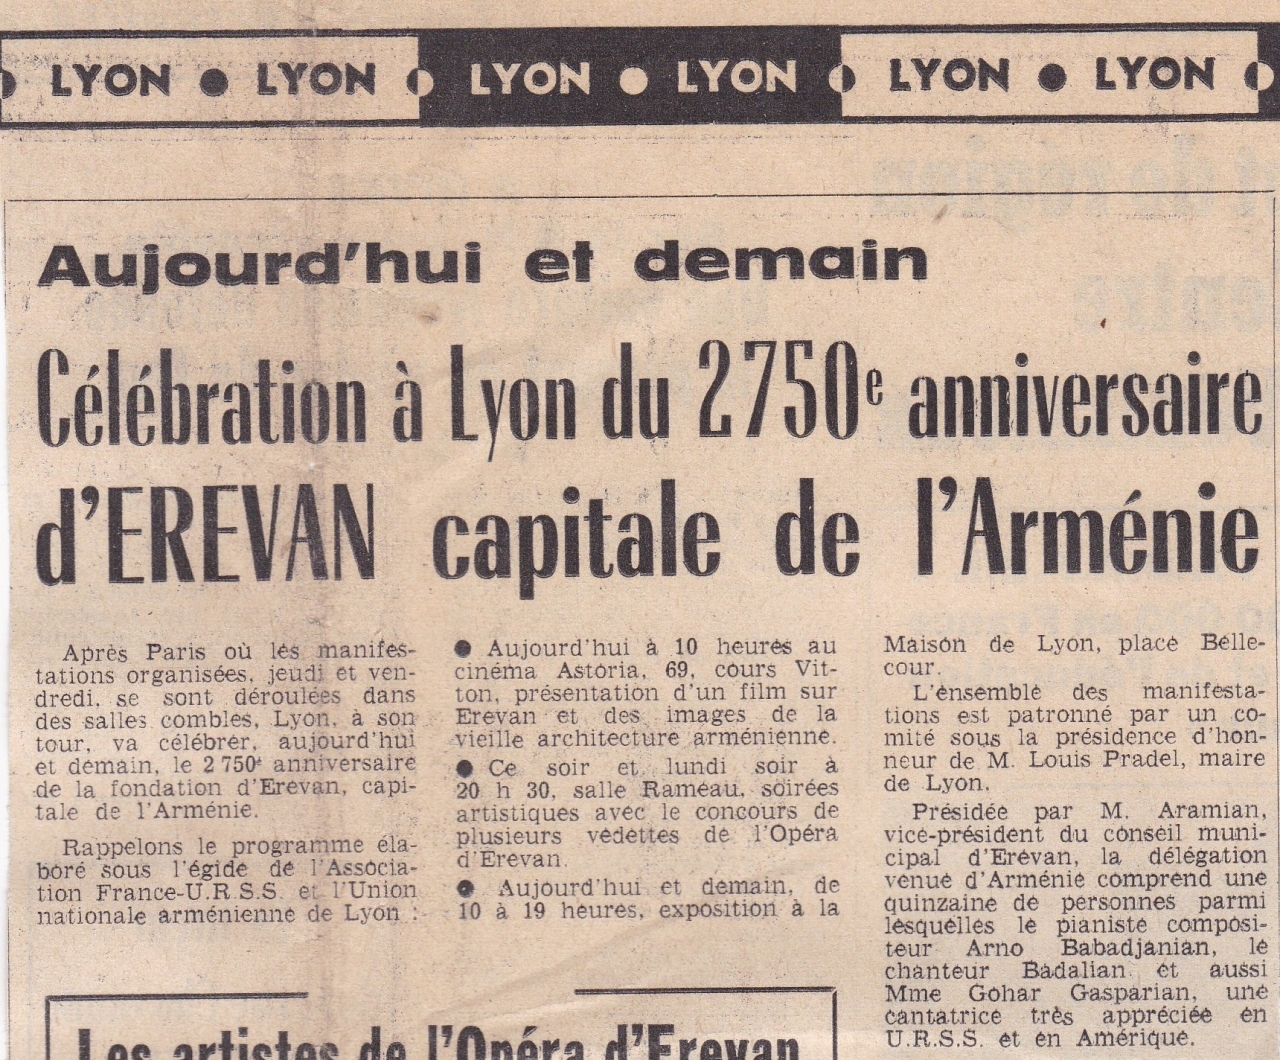 Célébration à Lyon du 2750 e anniversaire d’Erevan capitale de l’Arménie